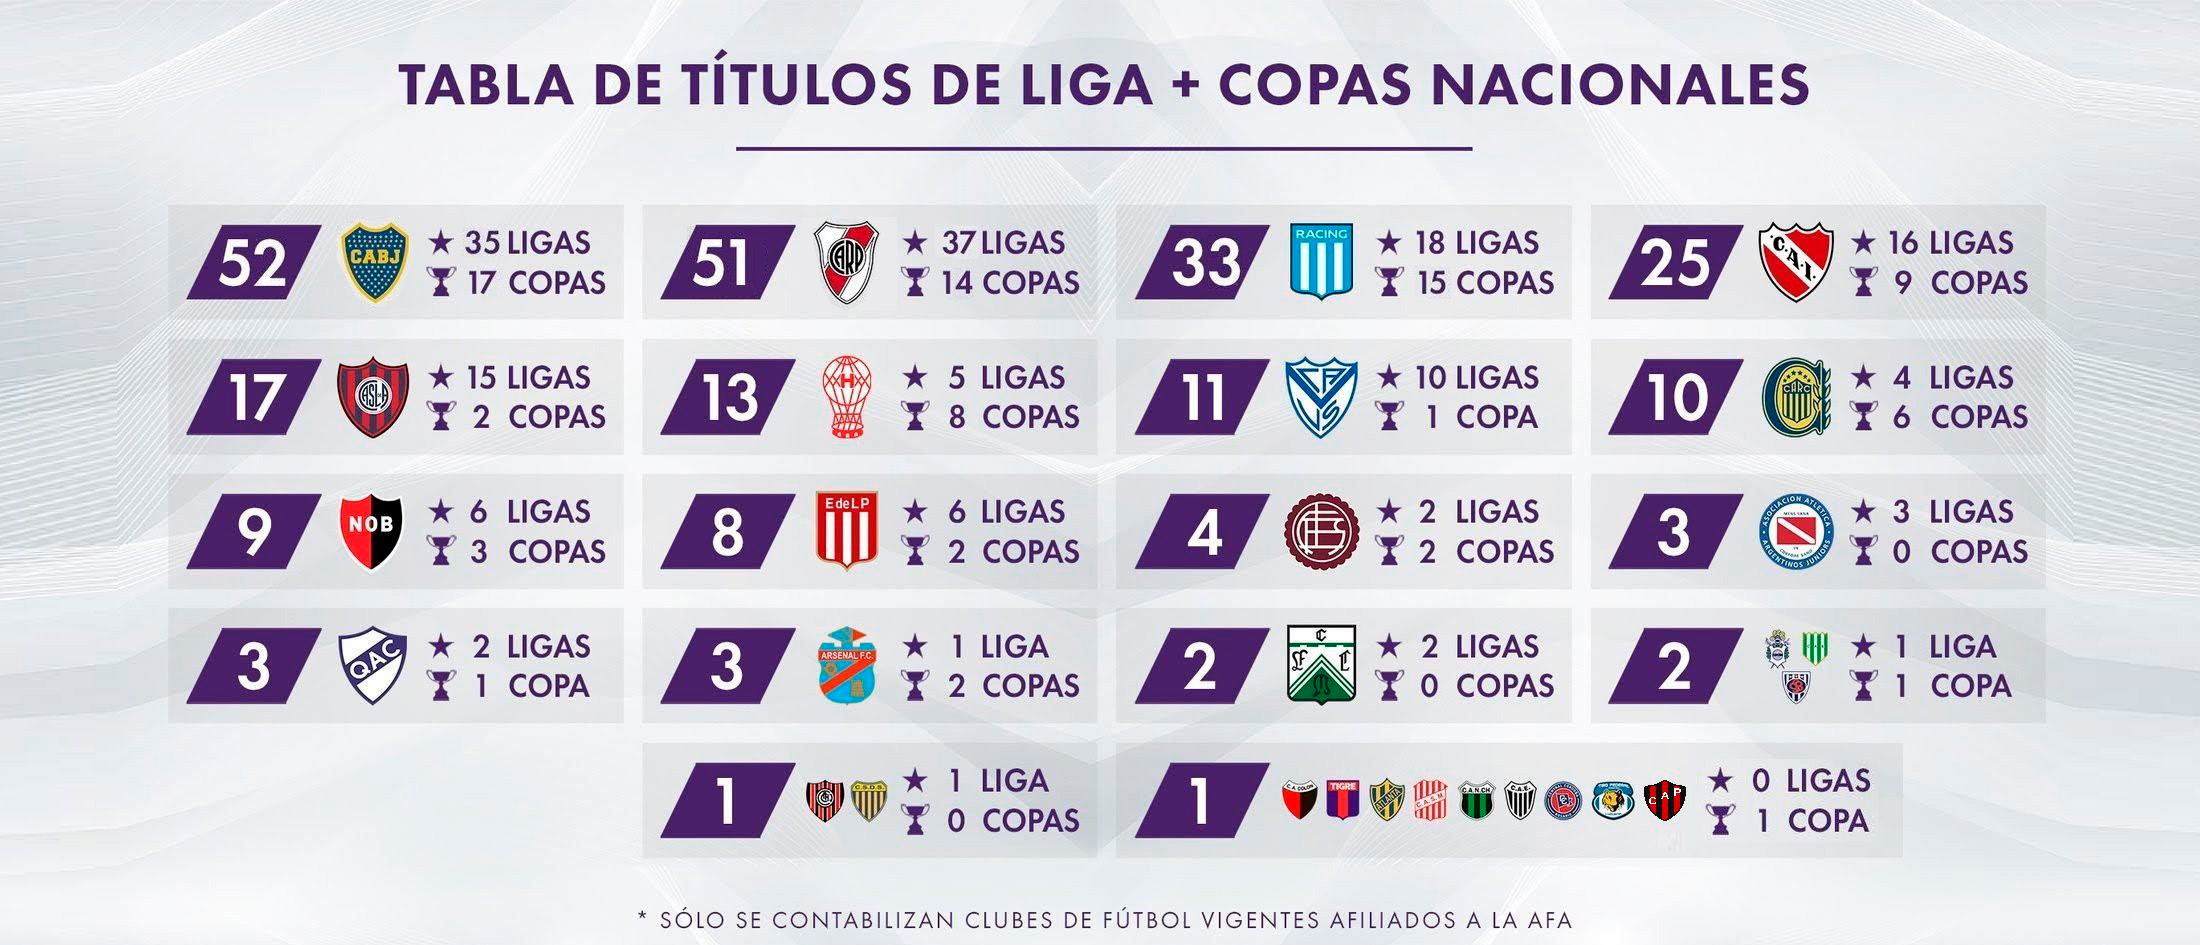 Tabla de títulos de Liga más Copas nacionales (Fuente: rhdelfutbol)
